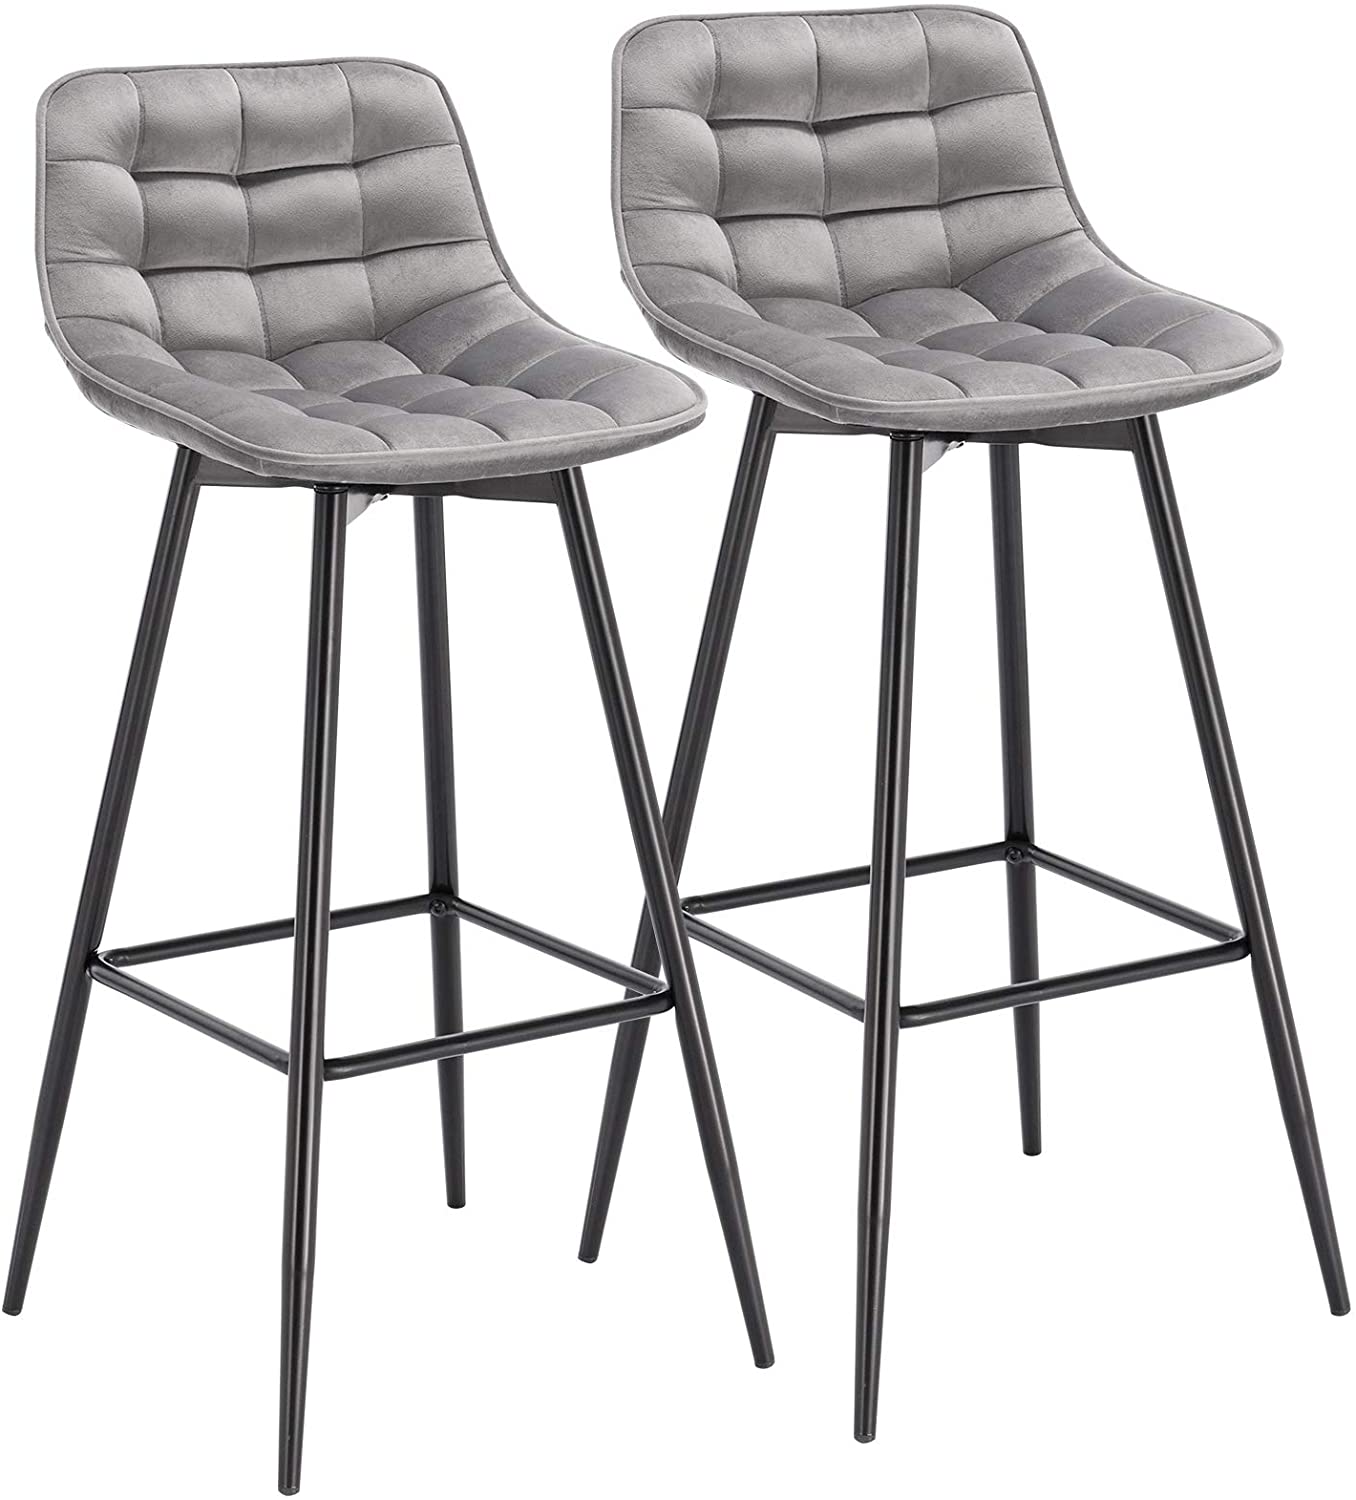 2 teiliges Designer Barhocker Set mit Leder/Velvet Sitz und Fußstütze aus Metallgestell für Zuhause und Bar Bistro - Unique Outlet